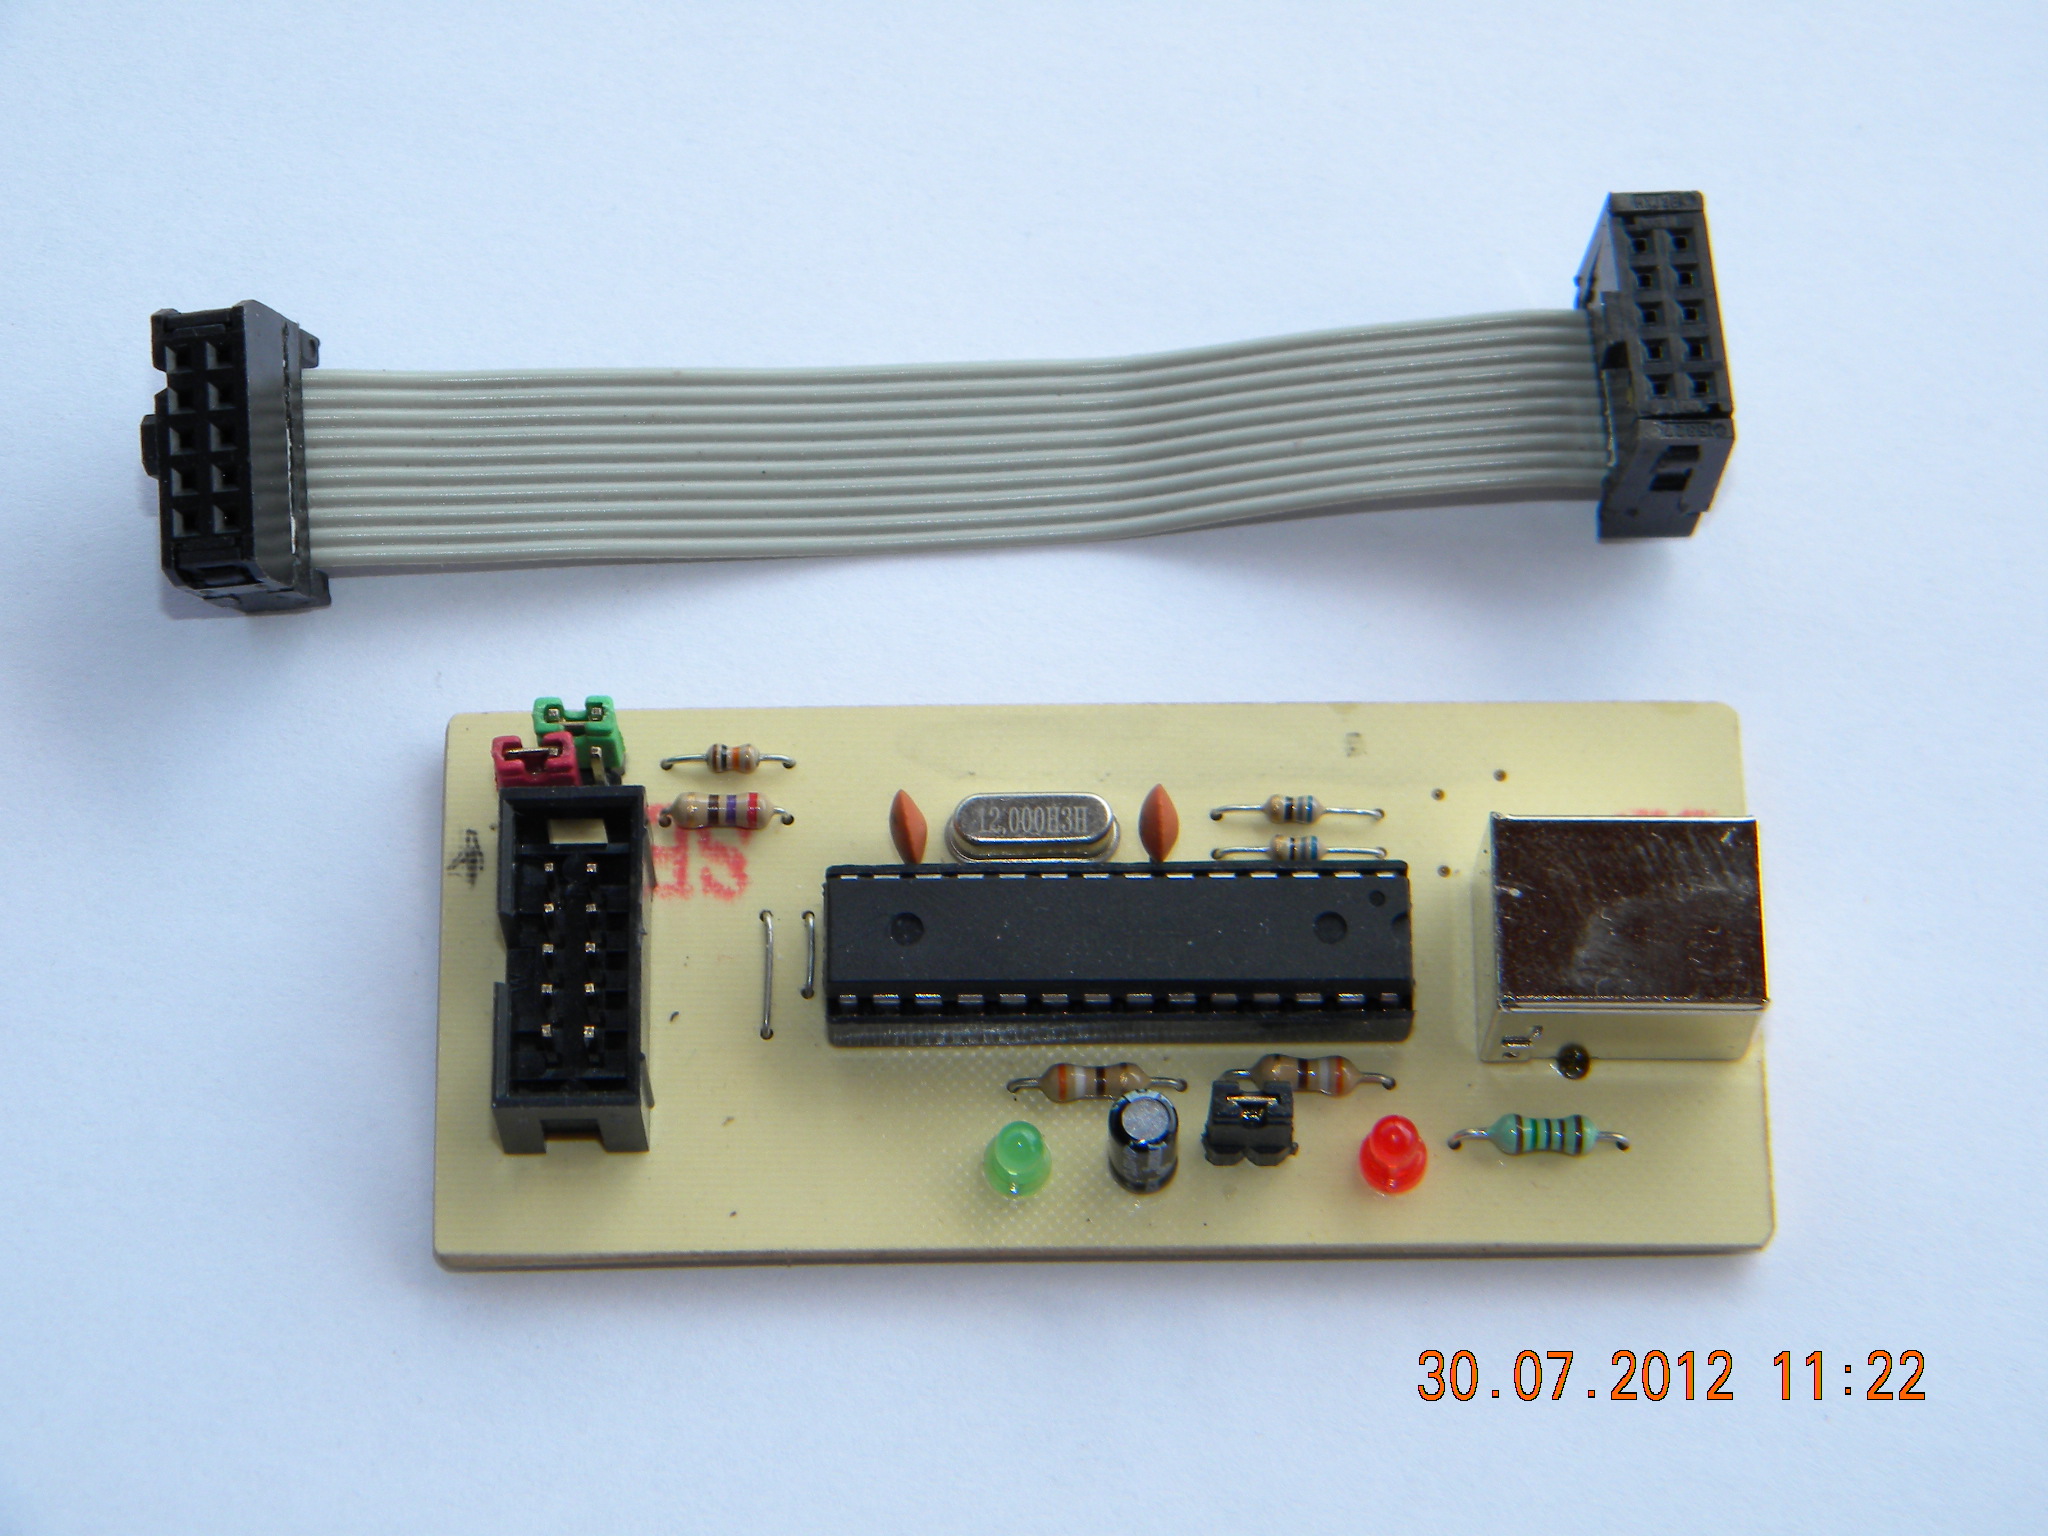 USBASP-Programator pentru microcontrollere Atmel